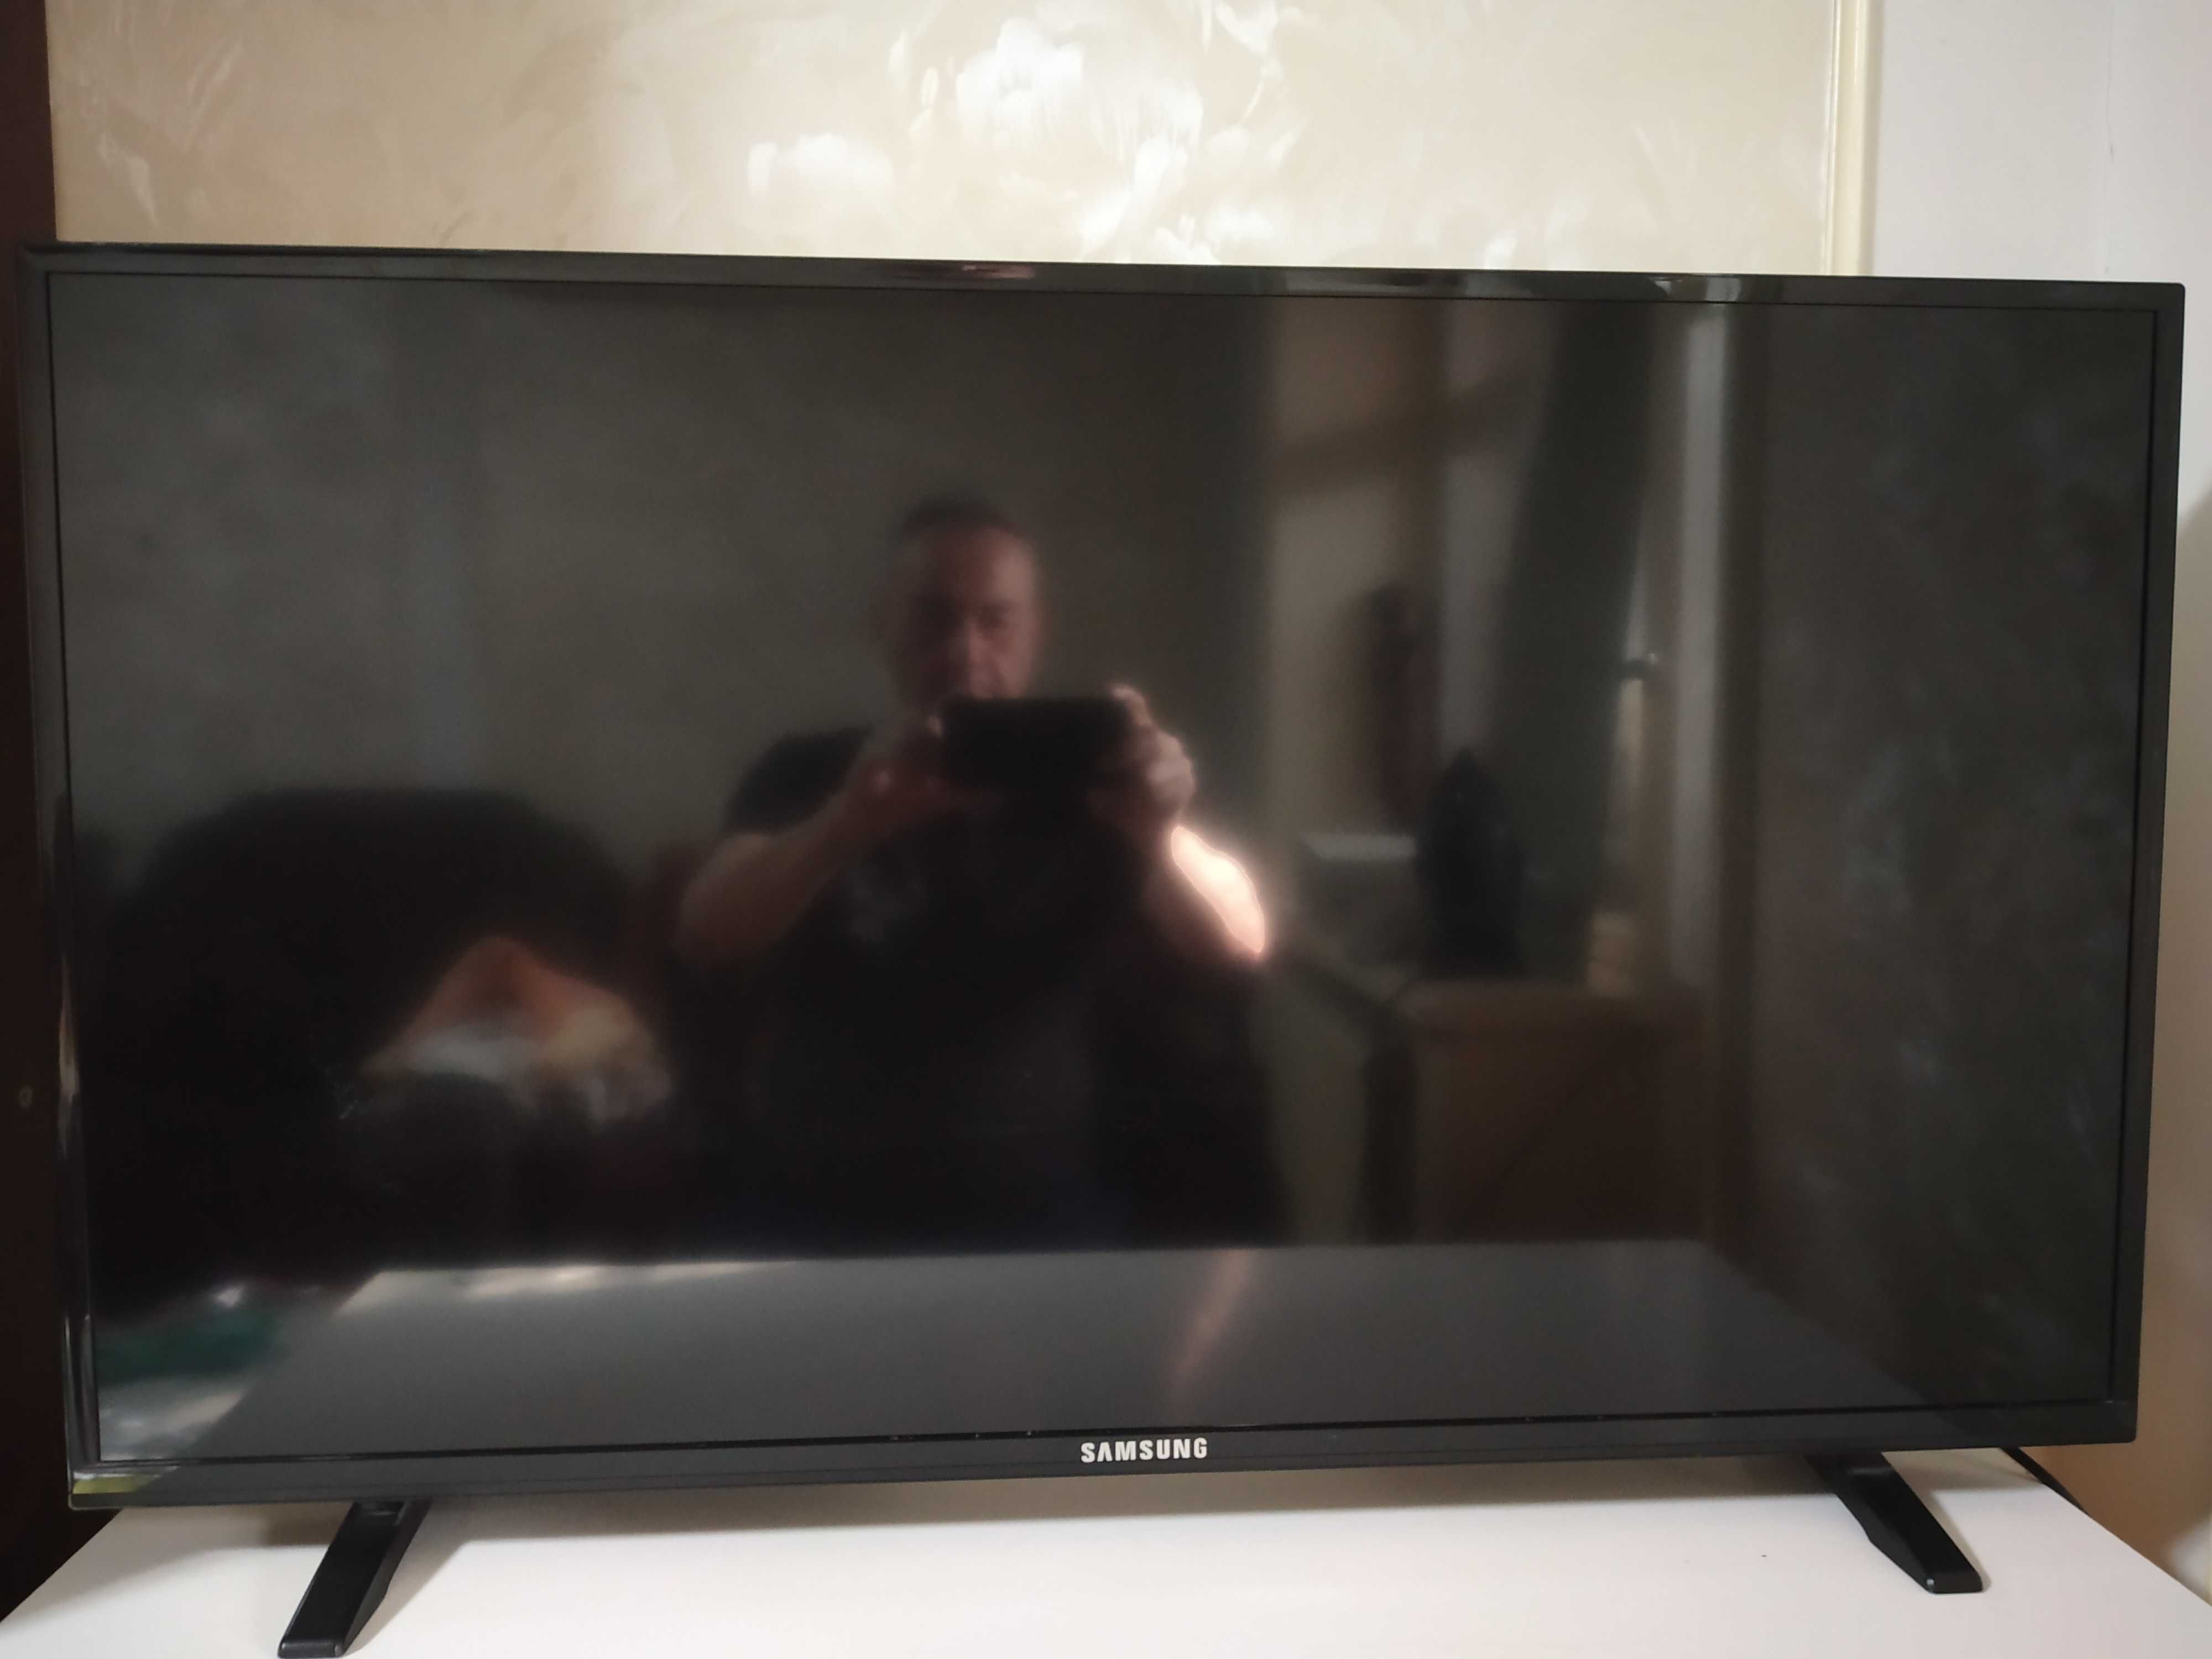 Продается телевизор SAMSUNG LED40E58TS